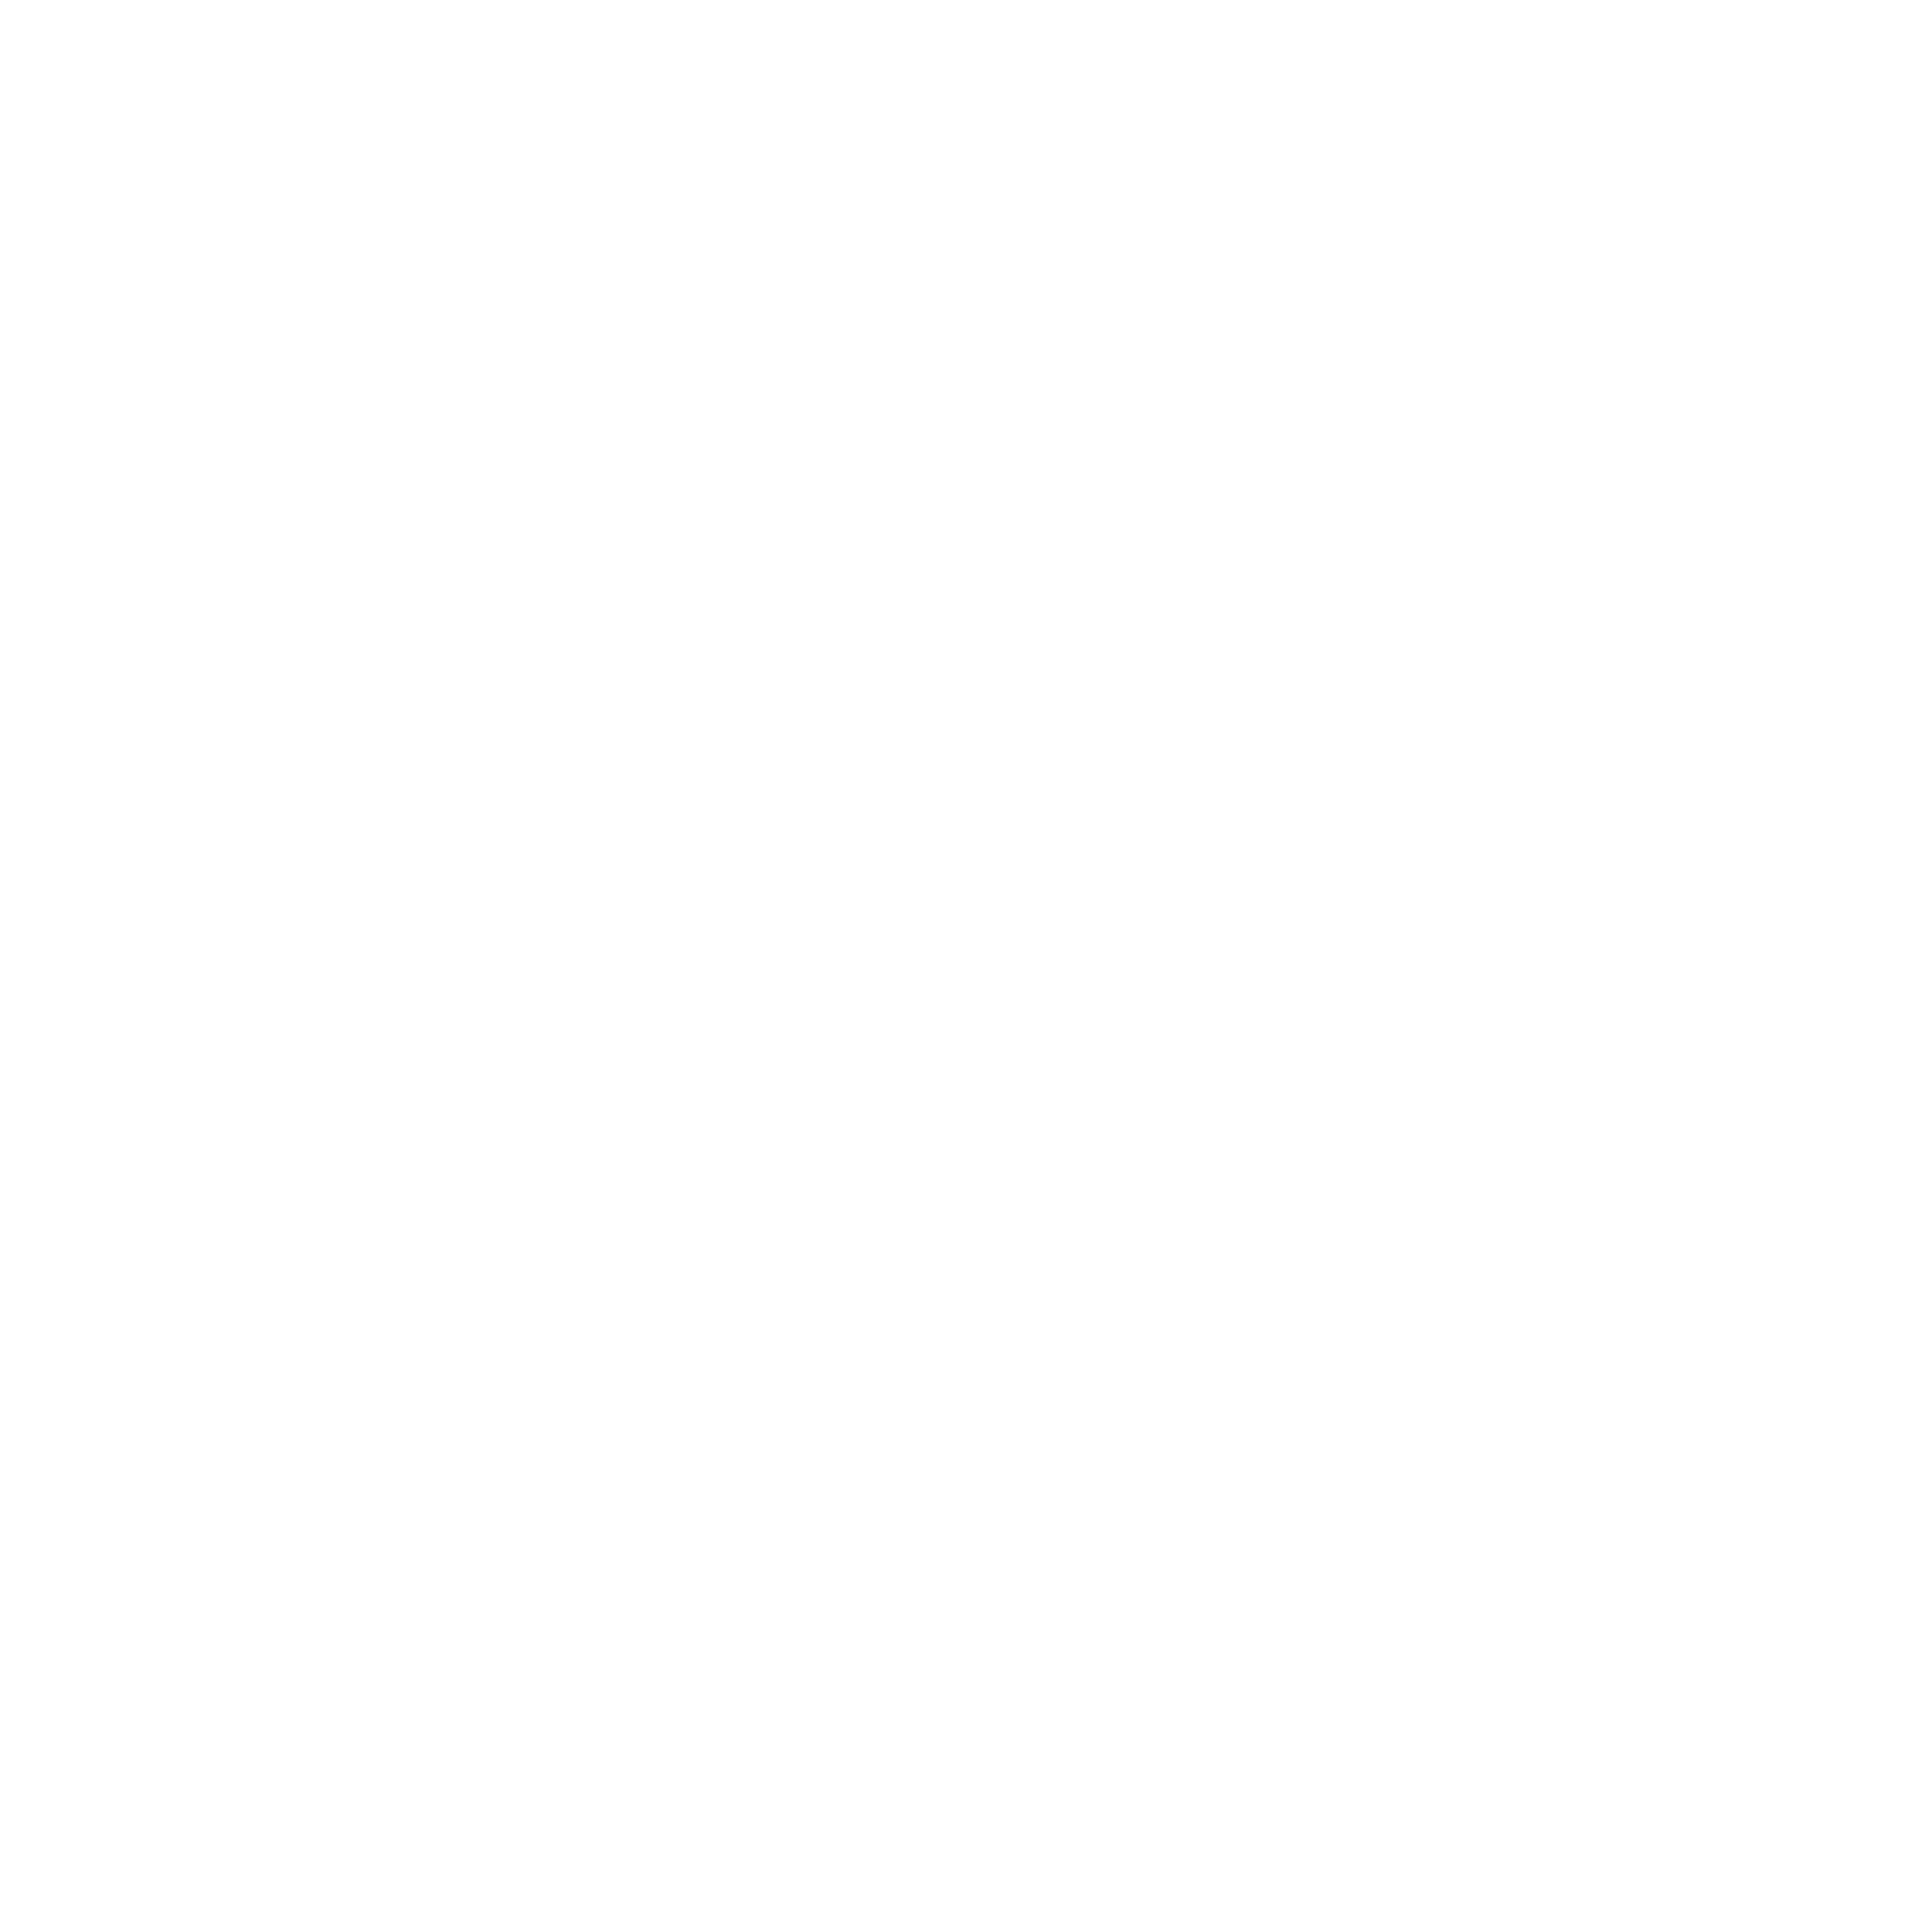 Shipper Đây!